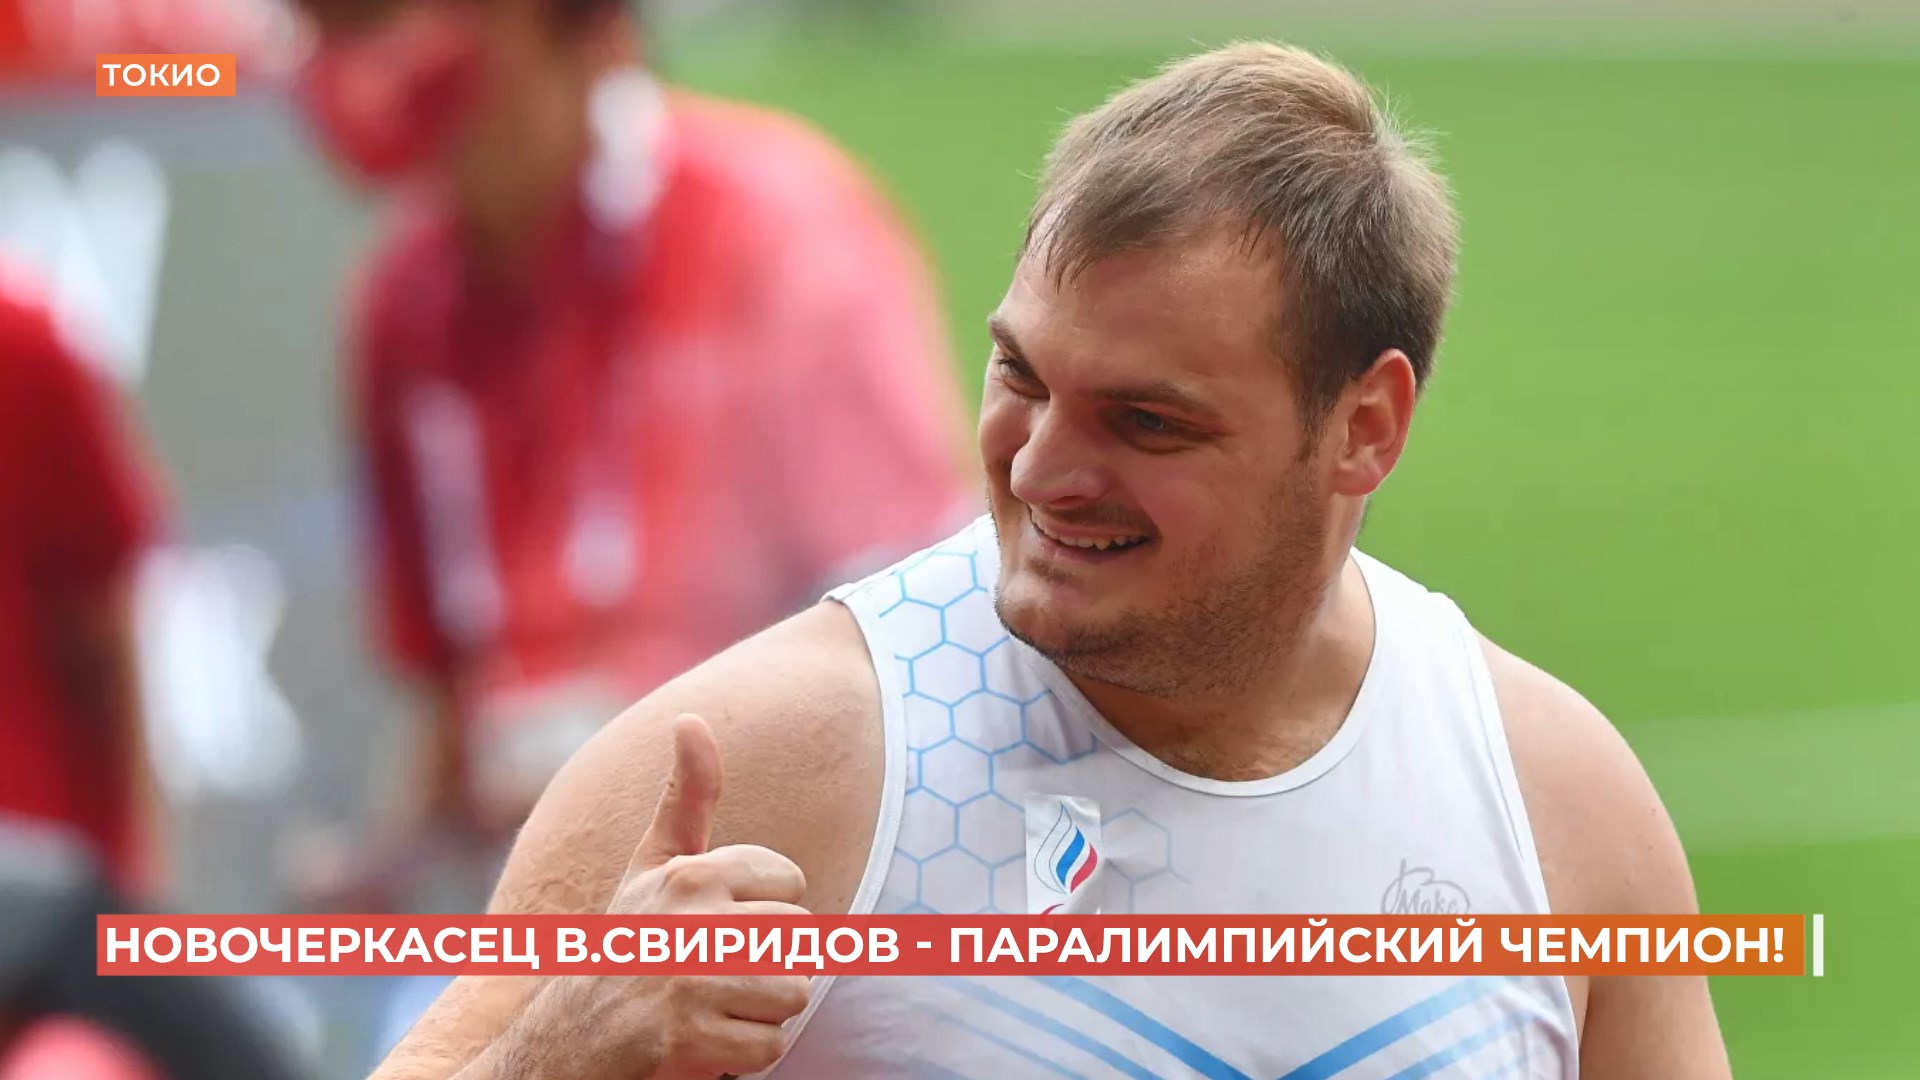 Новочеркасец Владимир Свиридов — паралимпийский чемпион  и мировой рекордсмен в толкании ядра